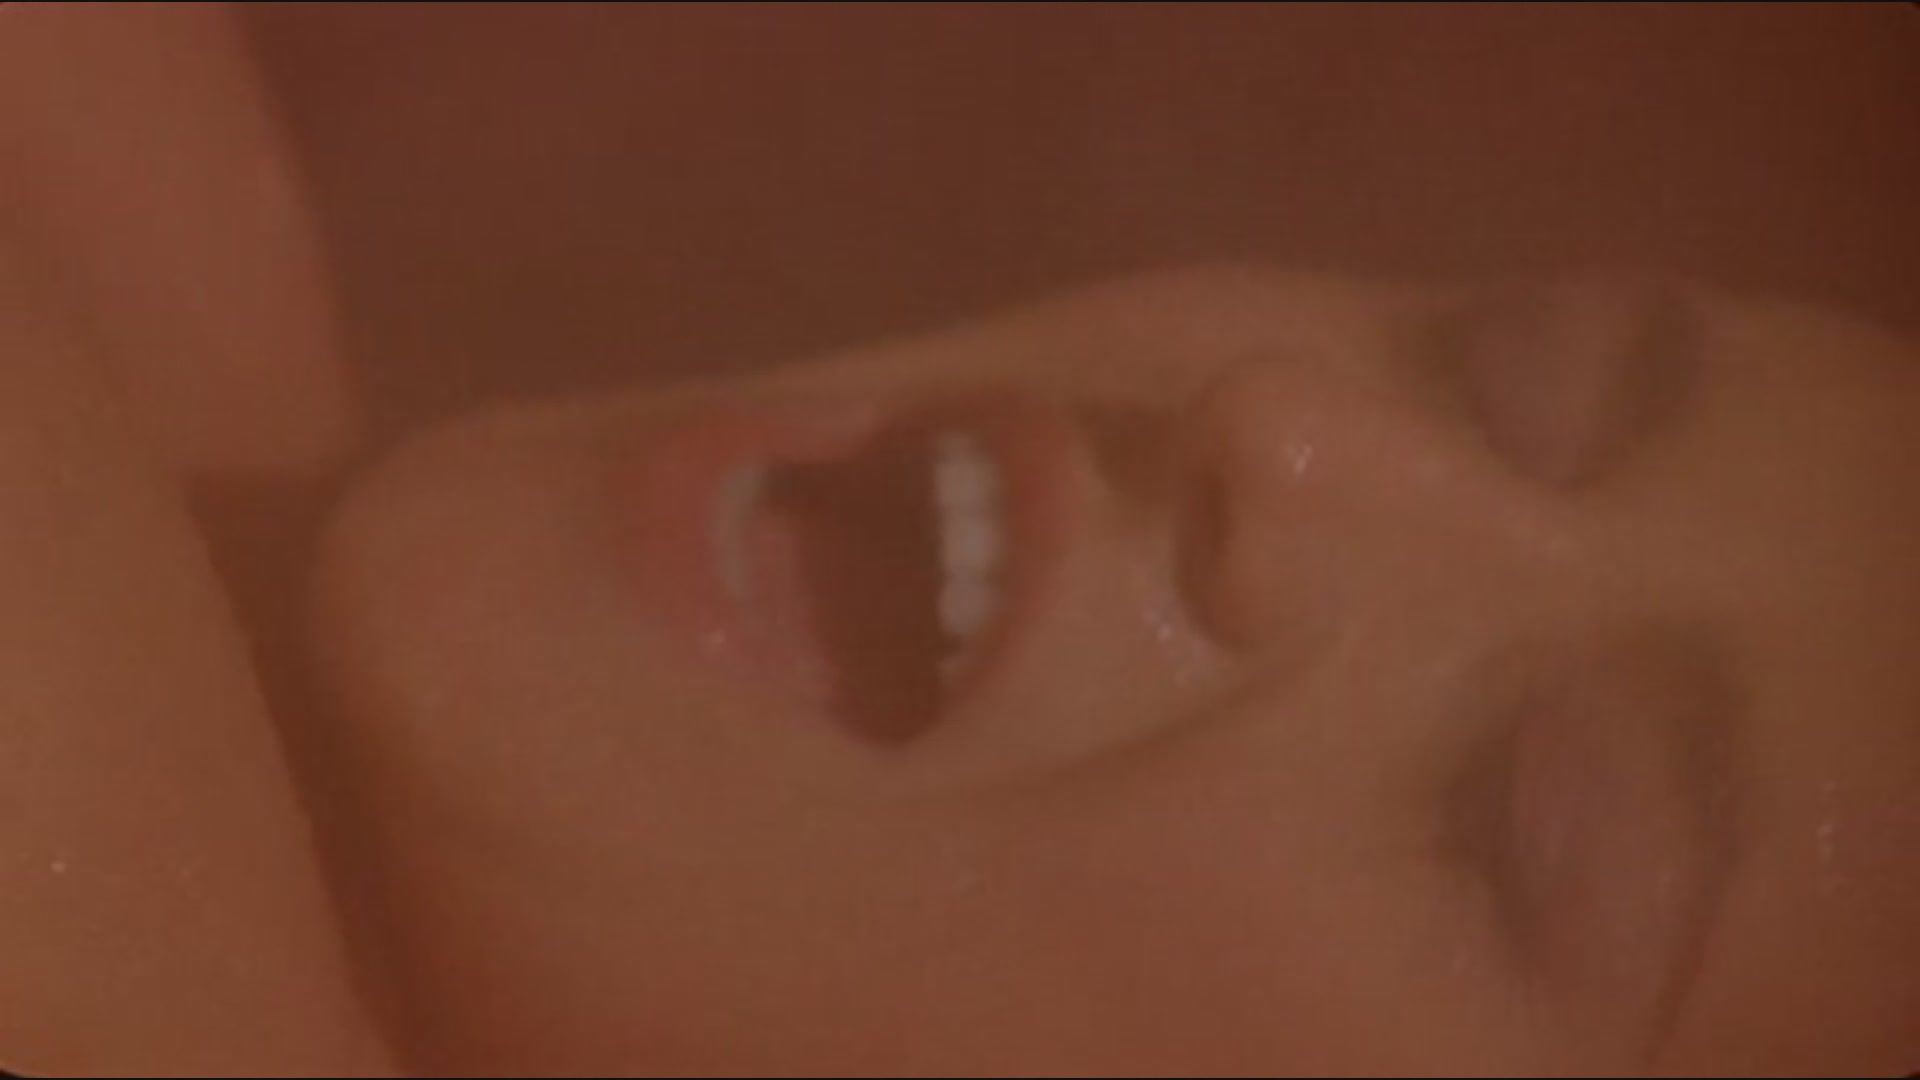 Mas Silvia Rossi sex scene in sauna from the movie "Fallo" Hard Fuck